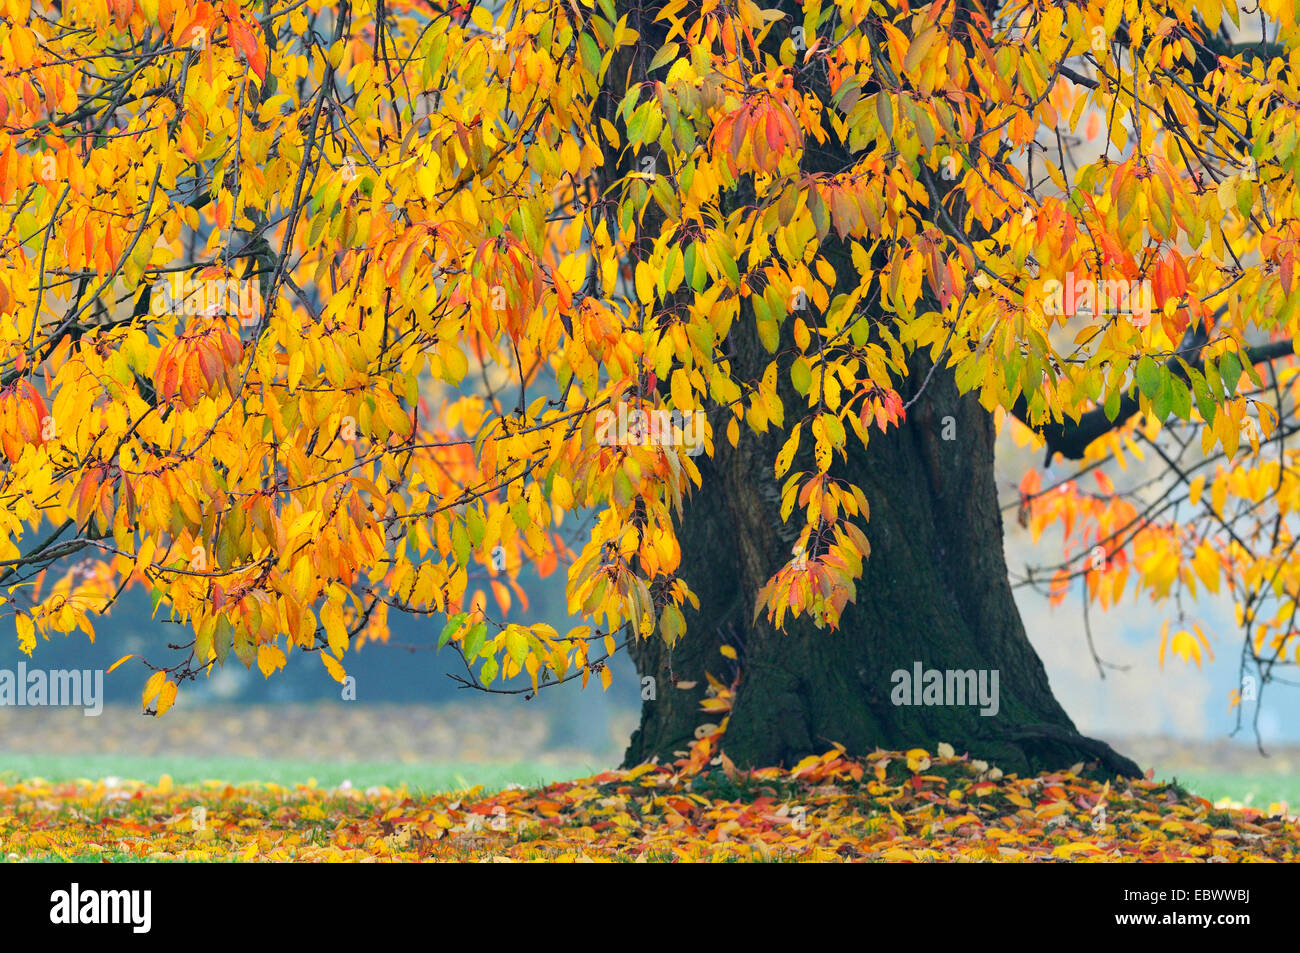 Wild cherry, Sweet cherry, gean, mazzard (Prunus avium), cherry tree in autumn, Germany Stock Photo